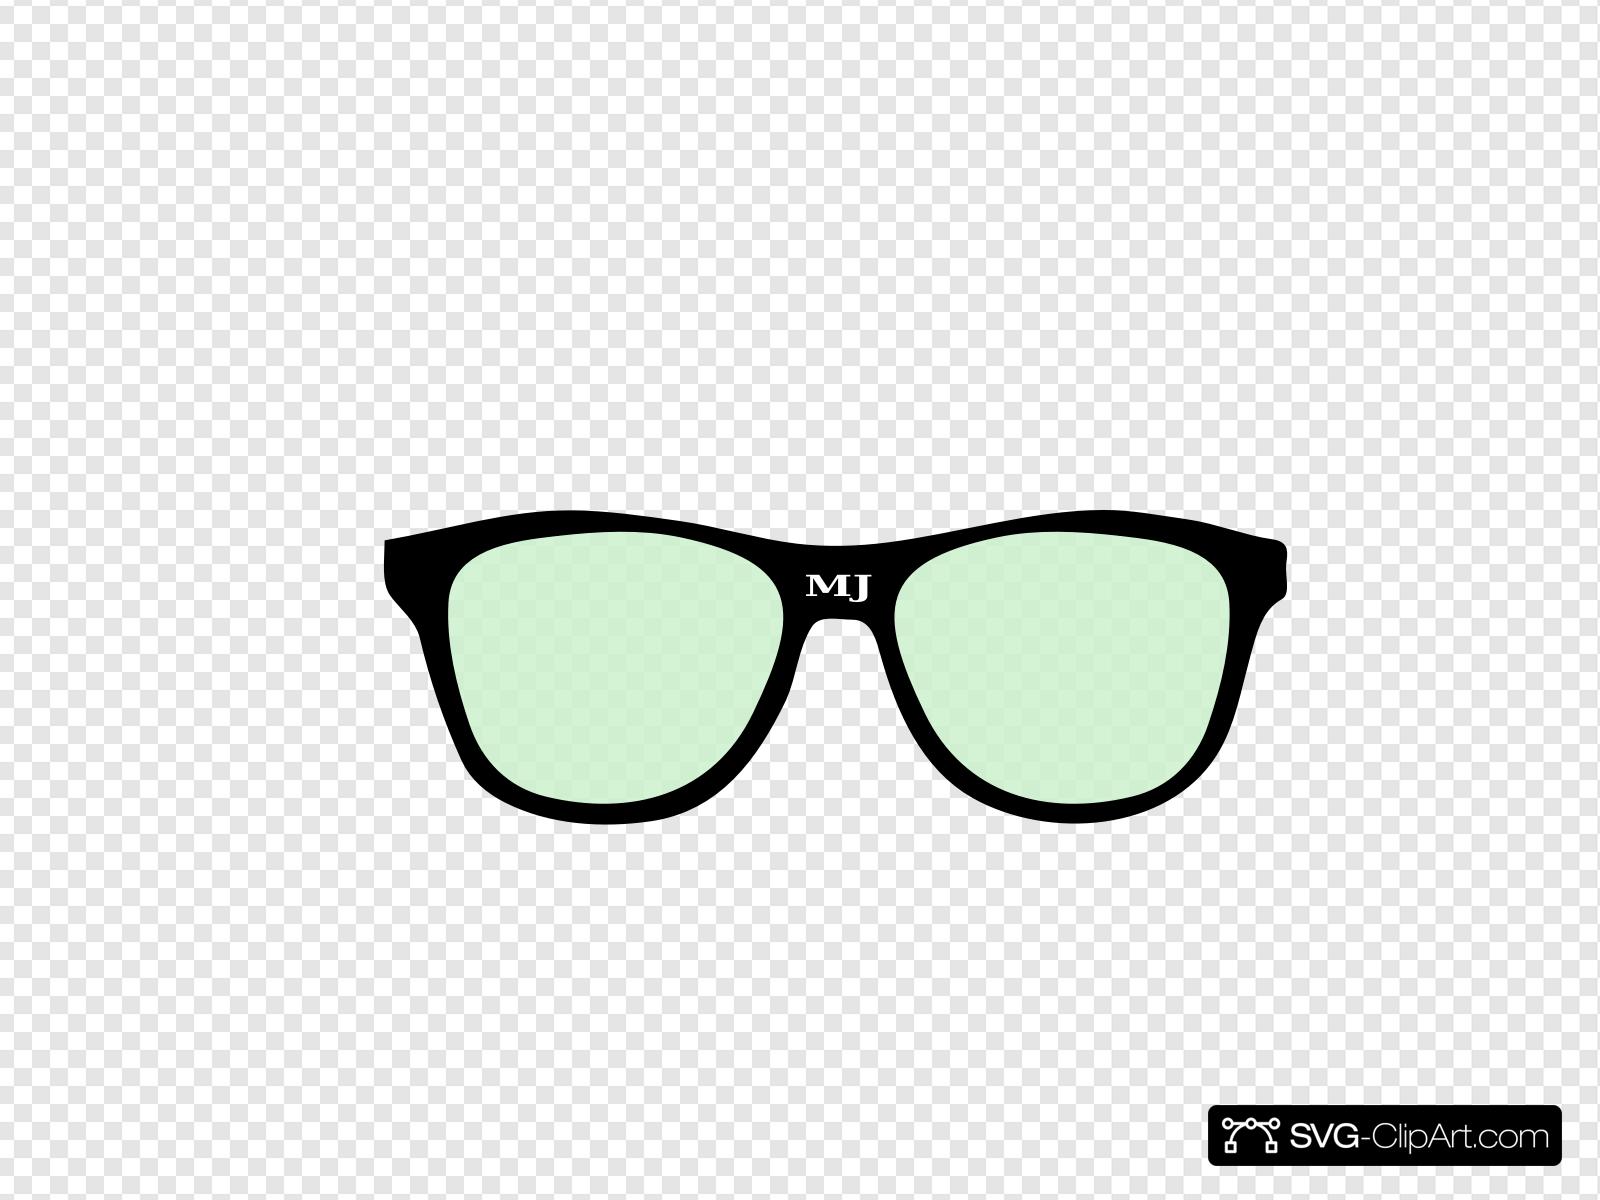 Sunglasses Clip art, Icon and SVG